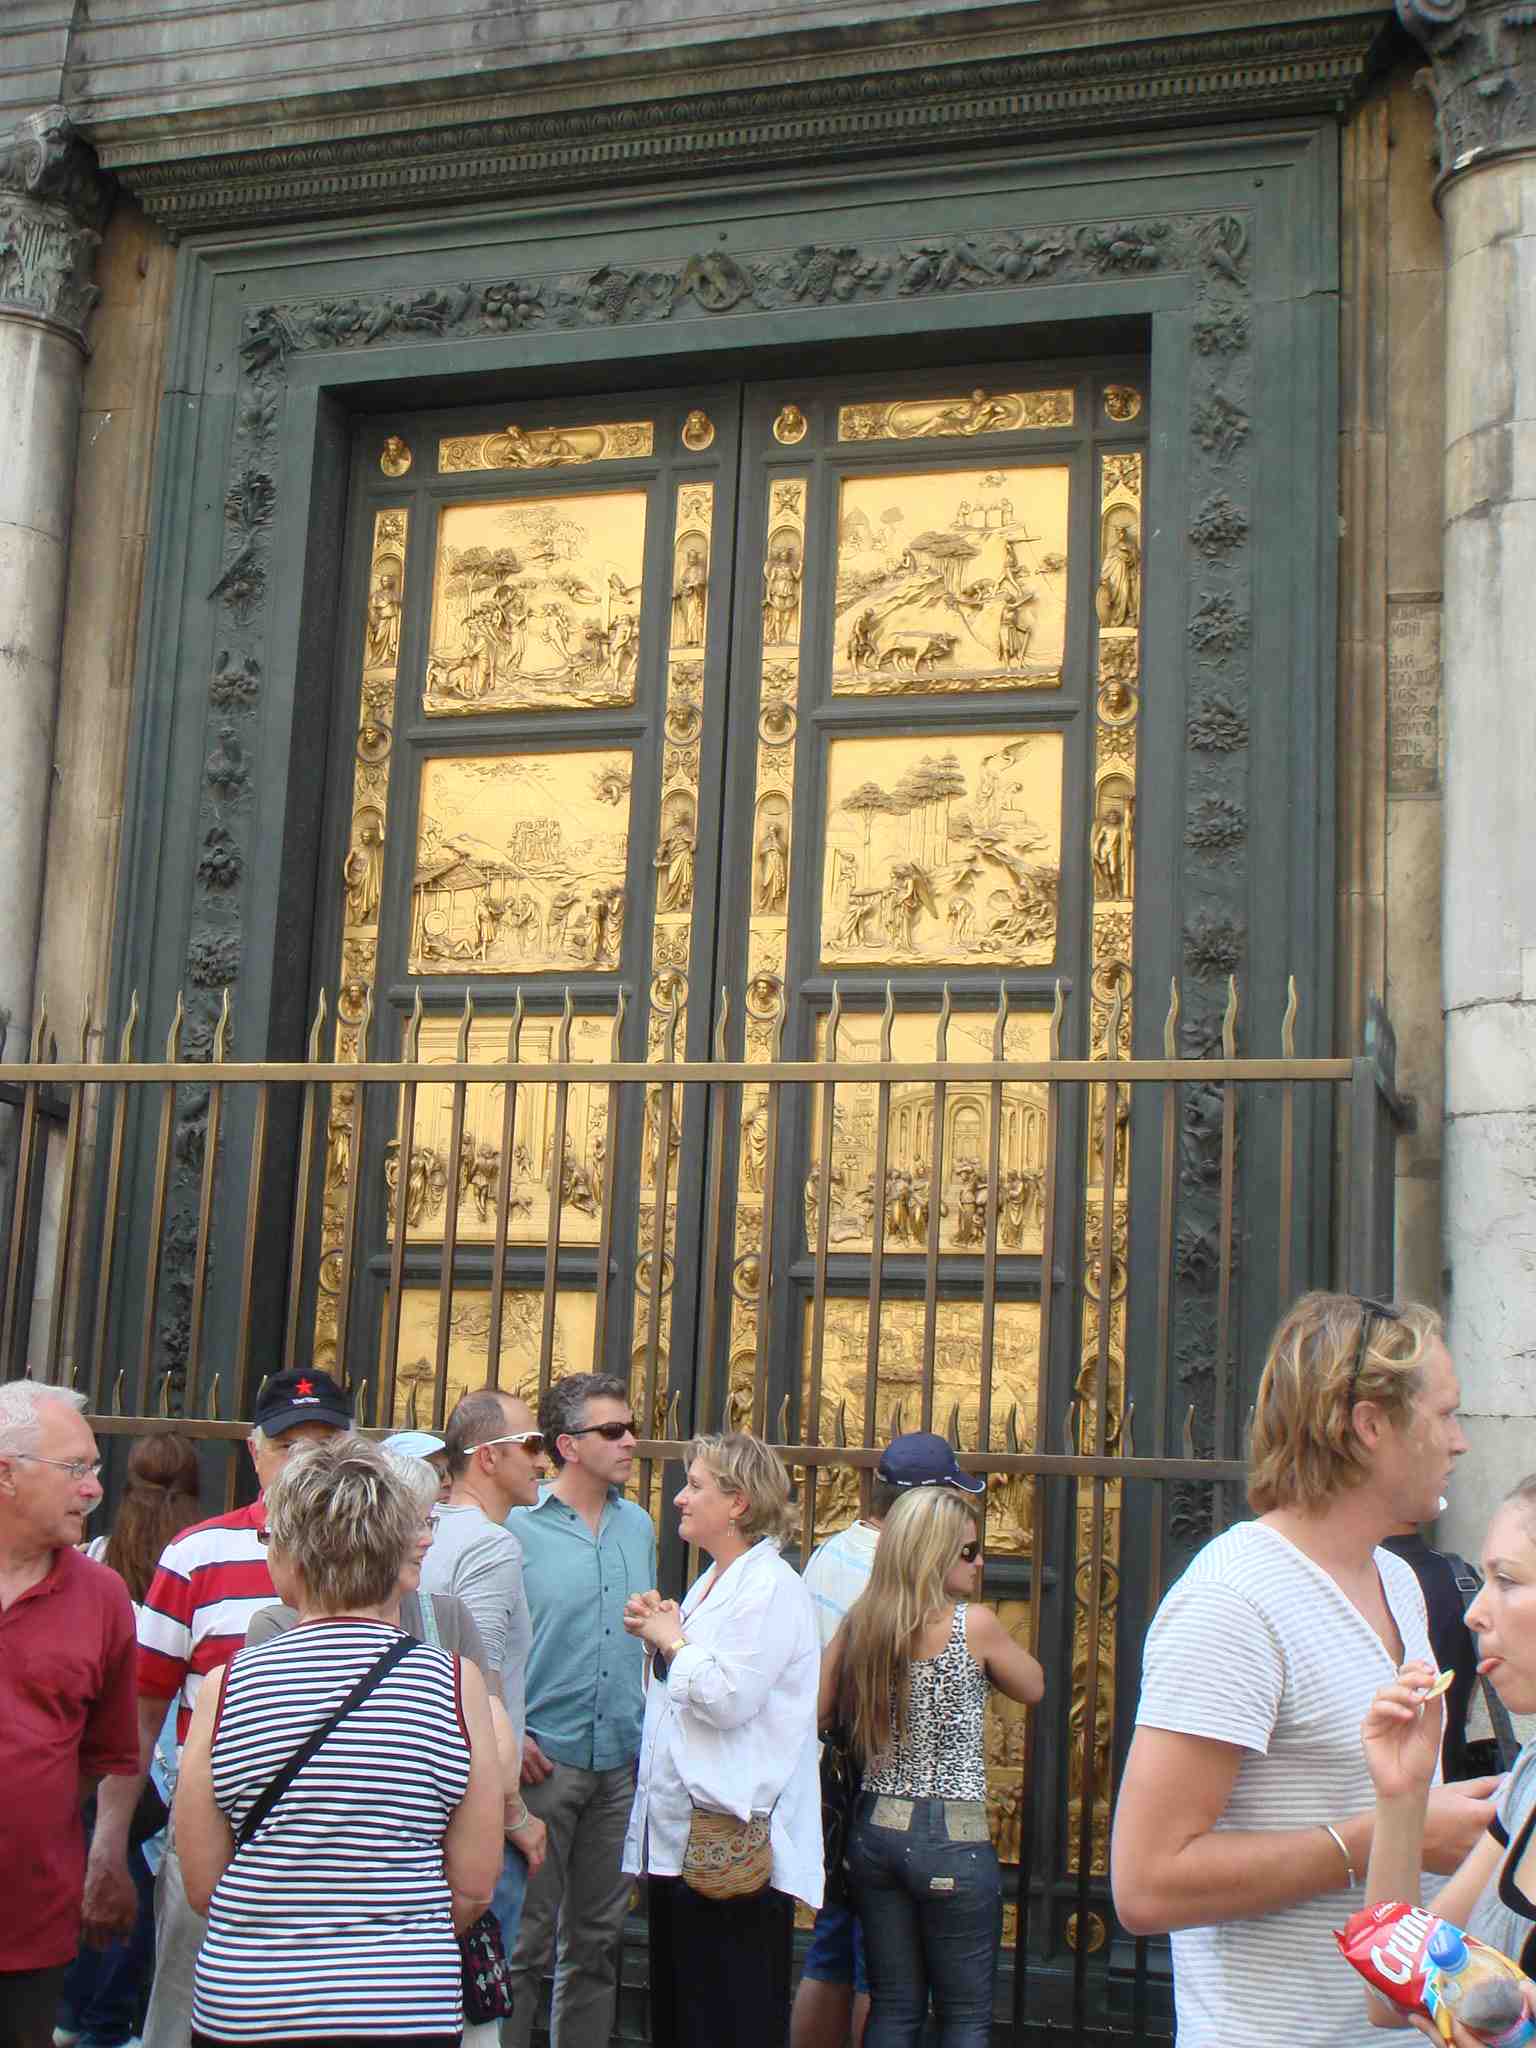 洗礼堂の、ミケランジェロが『黄金の門』と讃えたという扉です。